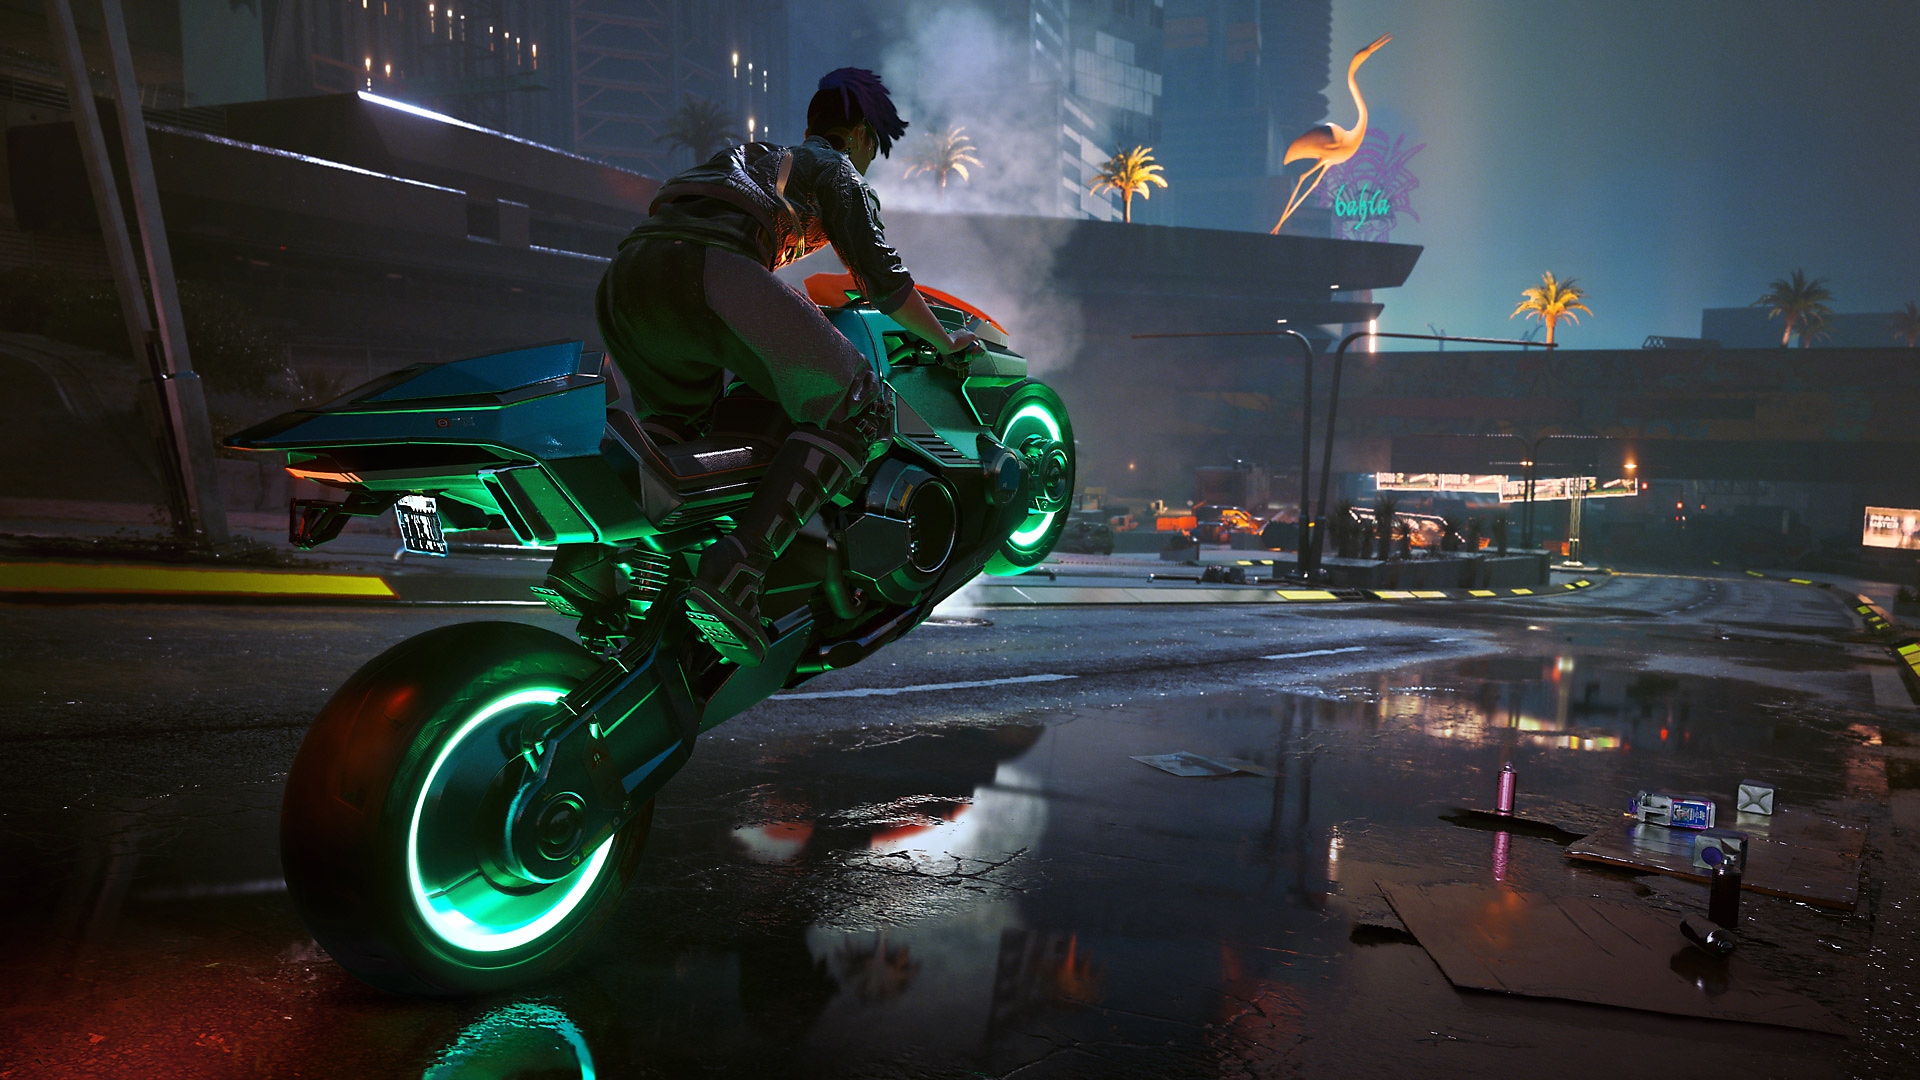 Cyberpunk 2077: Edgerunners mostrando um personagem numa manobra de moto com rodas verdes brilhantes